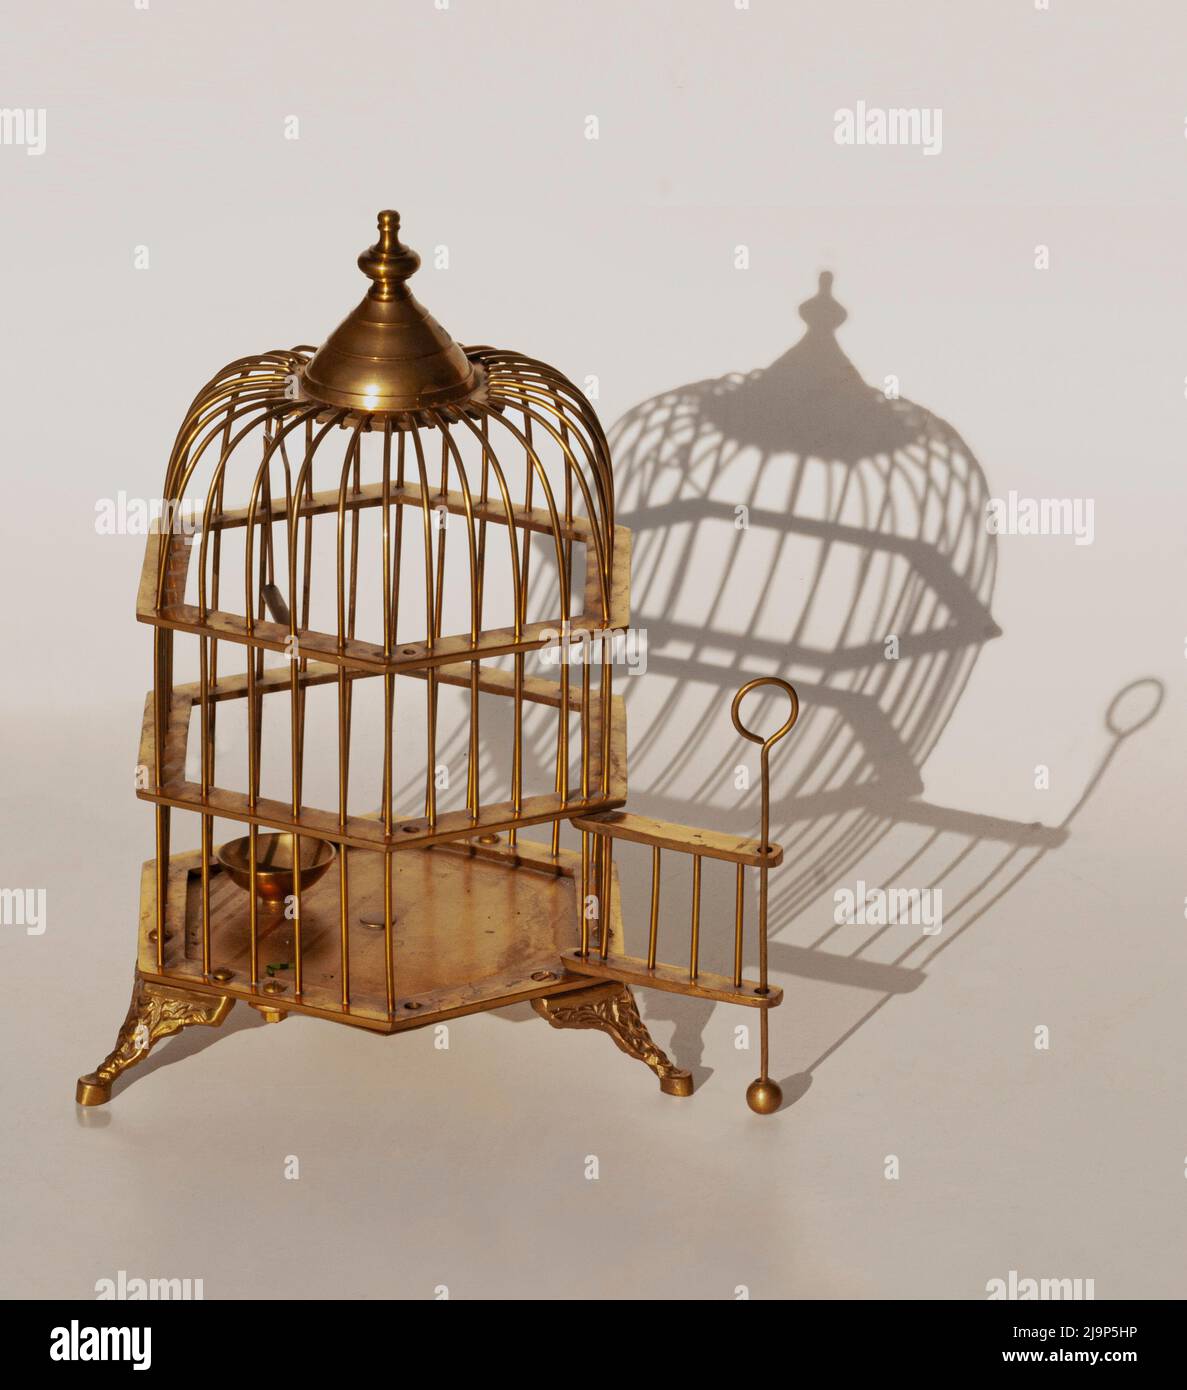 Esta jaula de pájaros de latón es de patas, tiene cinco lados formando un redondo en la parte superior, y una puerta abierta. En el fondo es una sombra agradable de la jaula de pájaros. Foto de stock